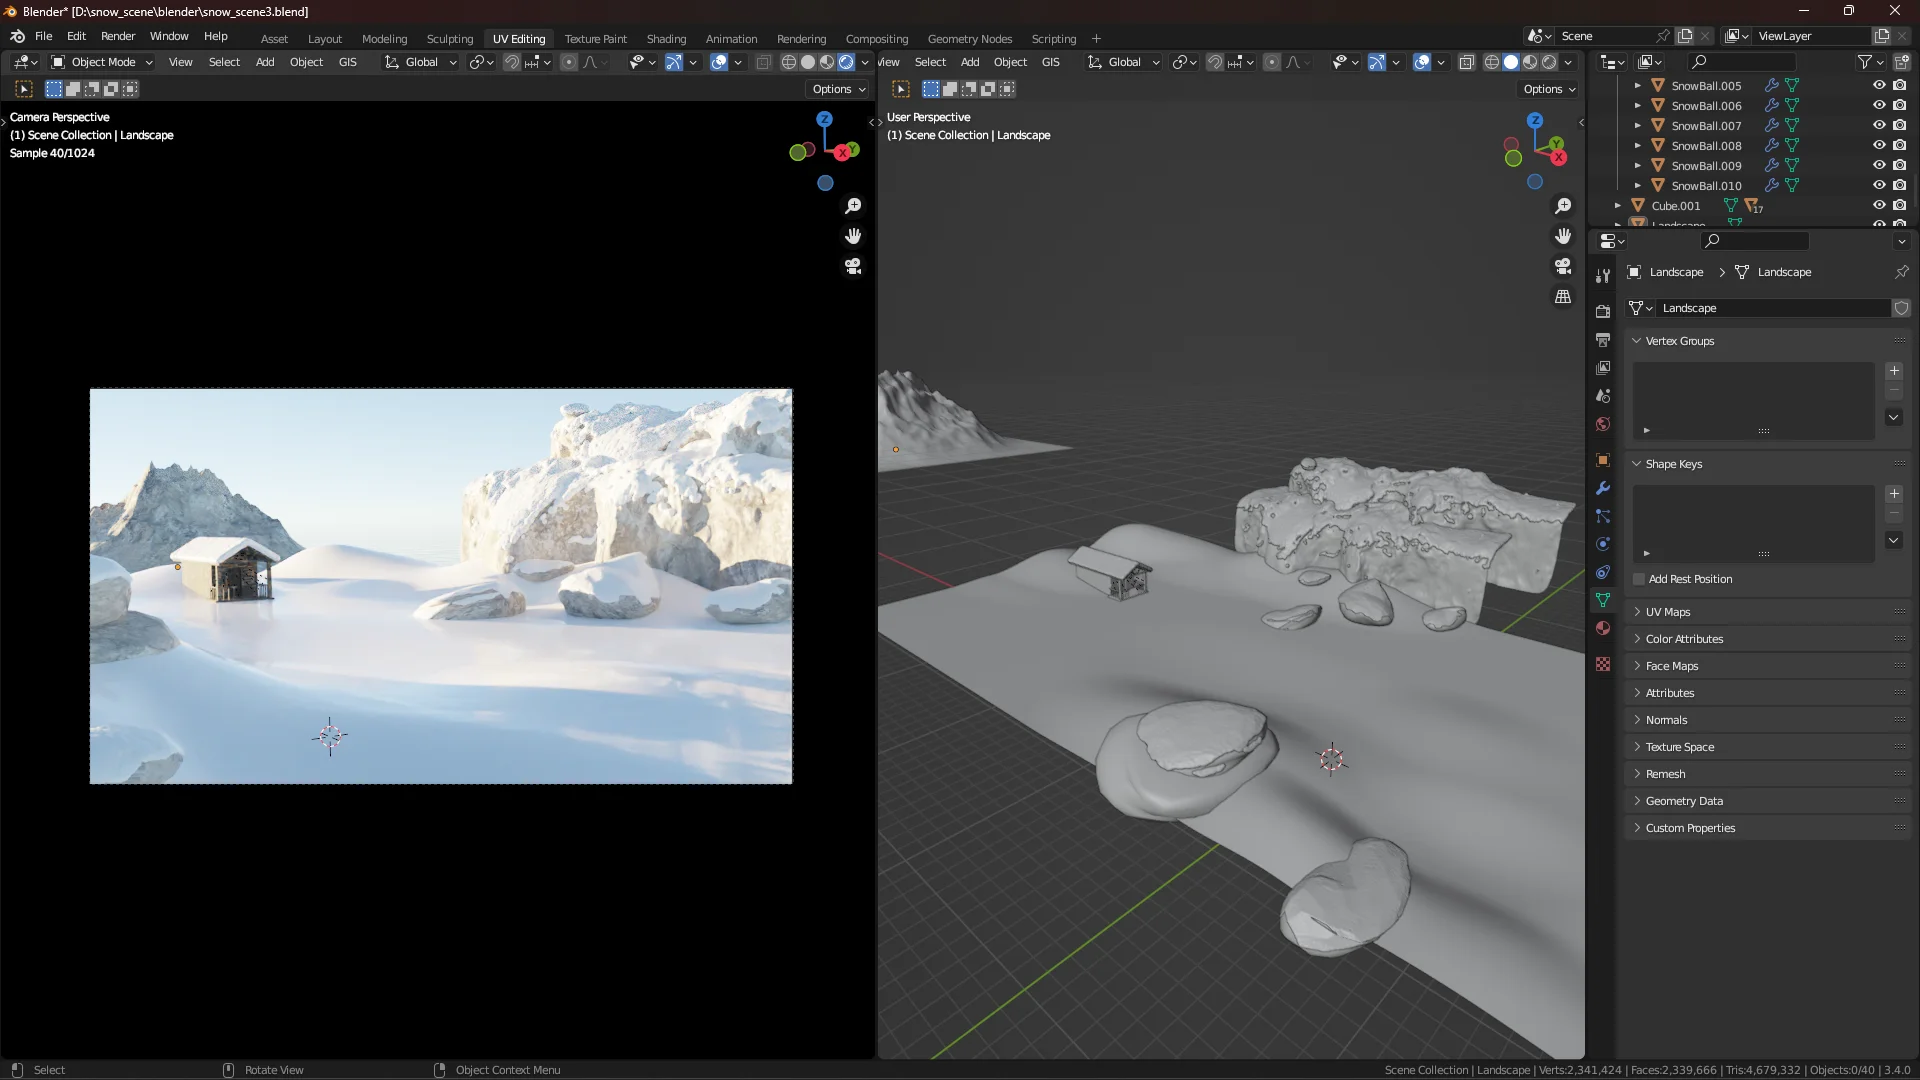 Schneelandschaft - 3D-Schnee-Szenen